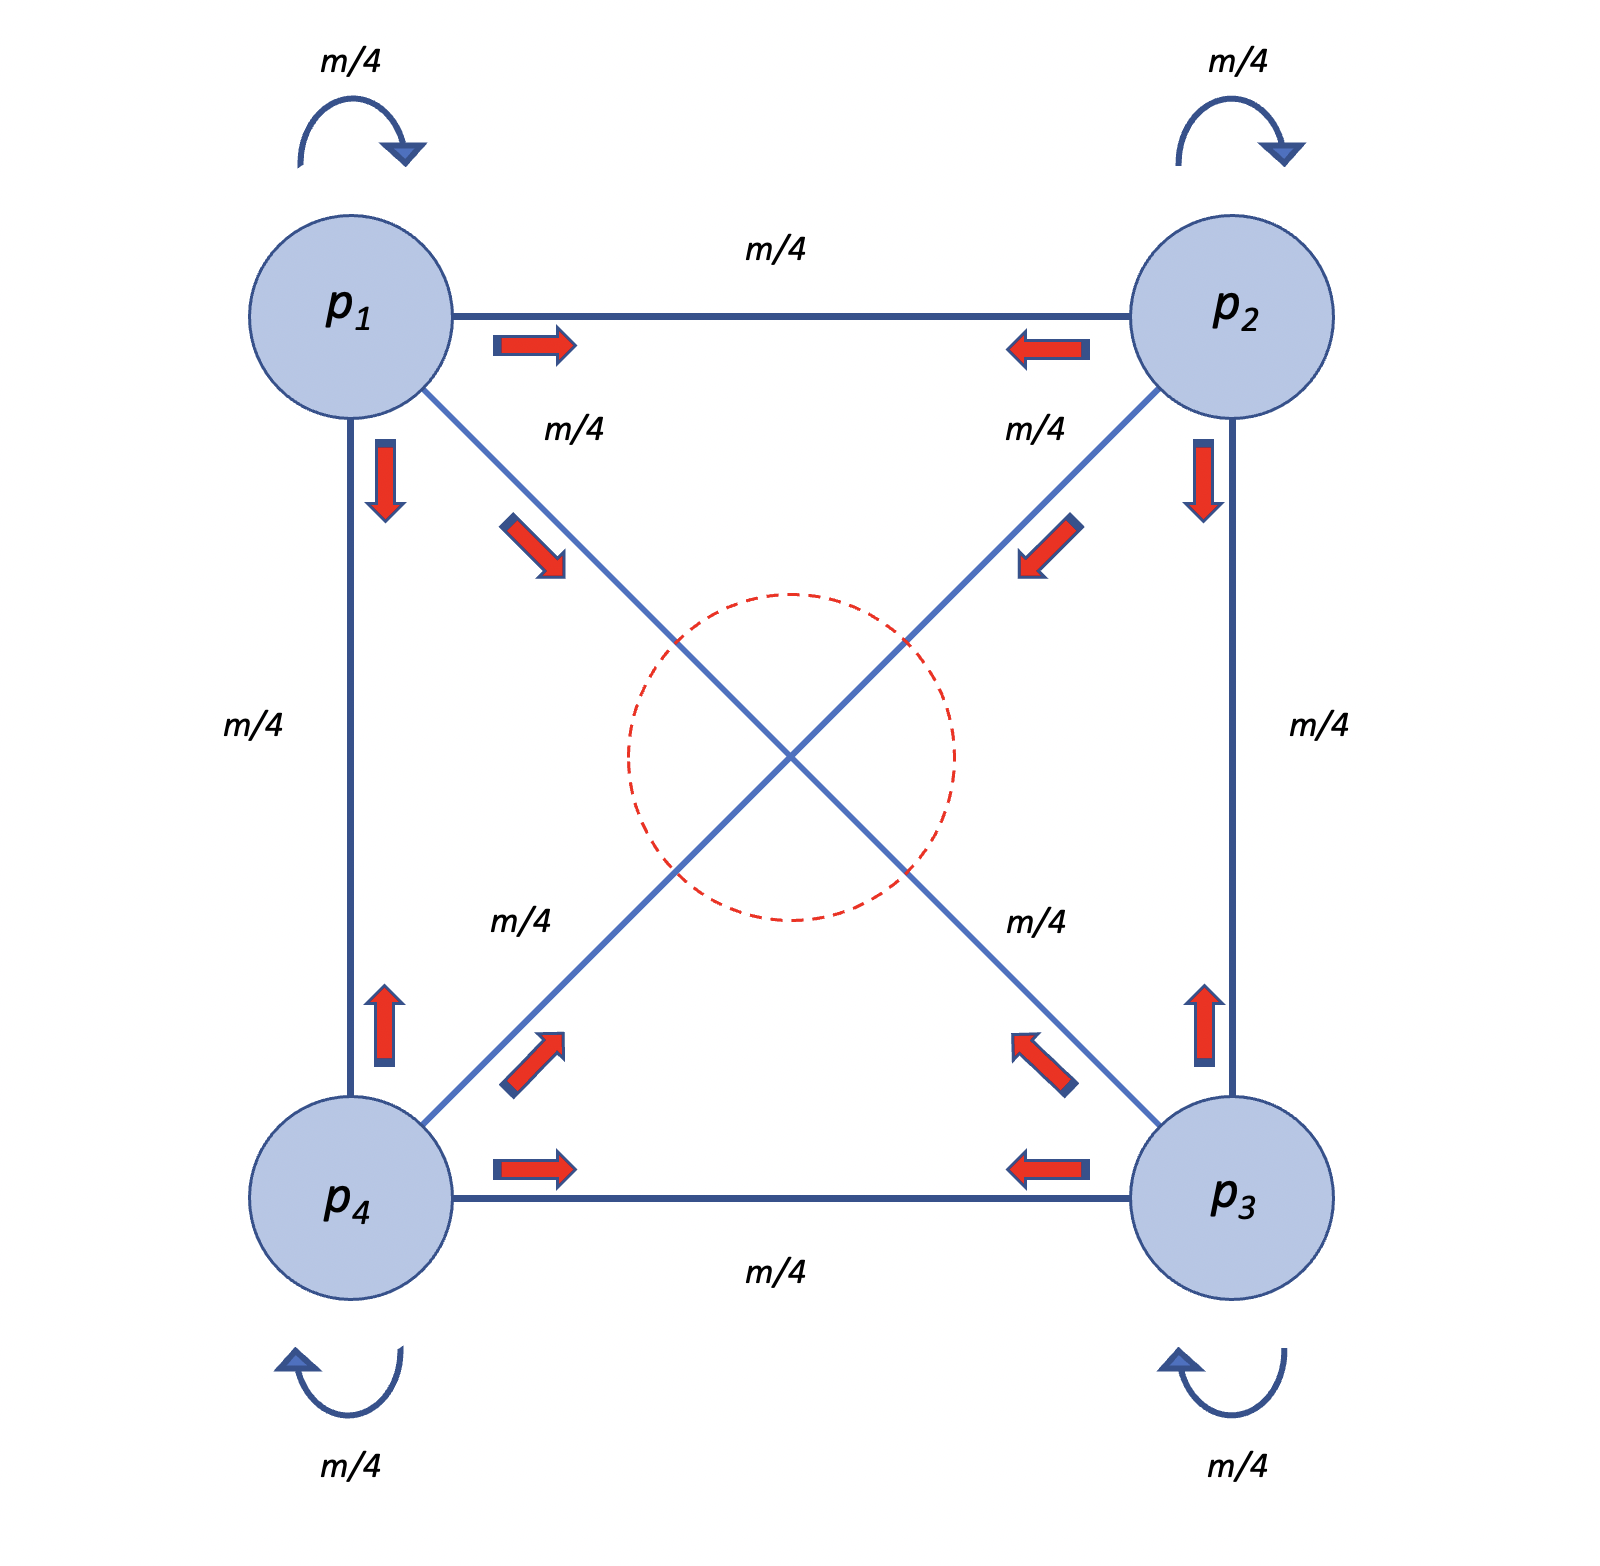 Modelo de islas, con 4 poblaciones. Las frecuencias del alelo \(A_1\) de cada una aparece dentro de los círculos correspondientes. Cada población intercambia con las otras exactamente la misma cantidad de migrantes, en nuestro caso \(m/4\) (incluyéndose ella misma), por lo que el modelo es equivalente a que cada población aporte una proporción \(m\) de gametos a un pool central y luego reciba del pool esa misma proporción \(m\) elegidos al azar. Elaboración propia sobre idea en Hartl y Clark (Hartl and Clark 2007).